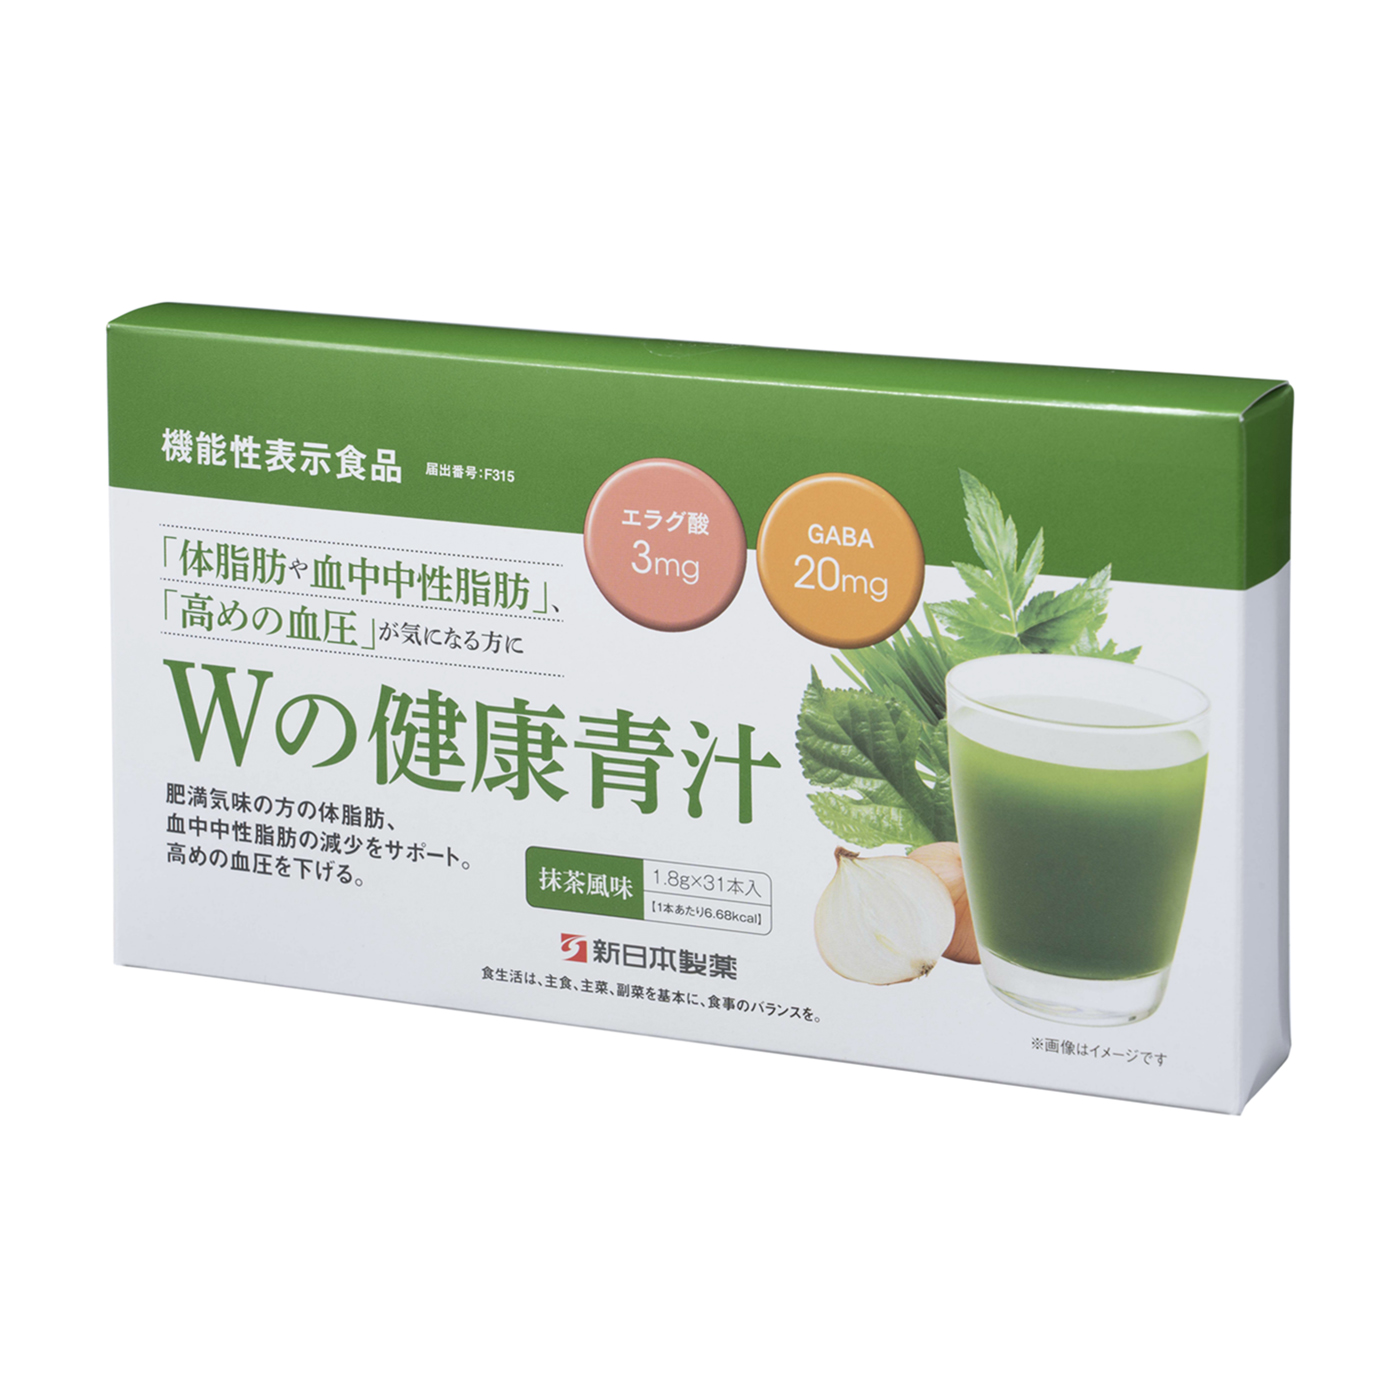 素晴らしい品質 新日本製薬 生活習慣サポート Wの健康青汁2箱セット